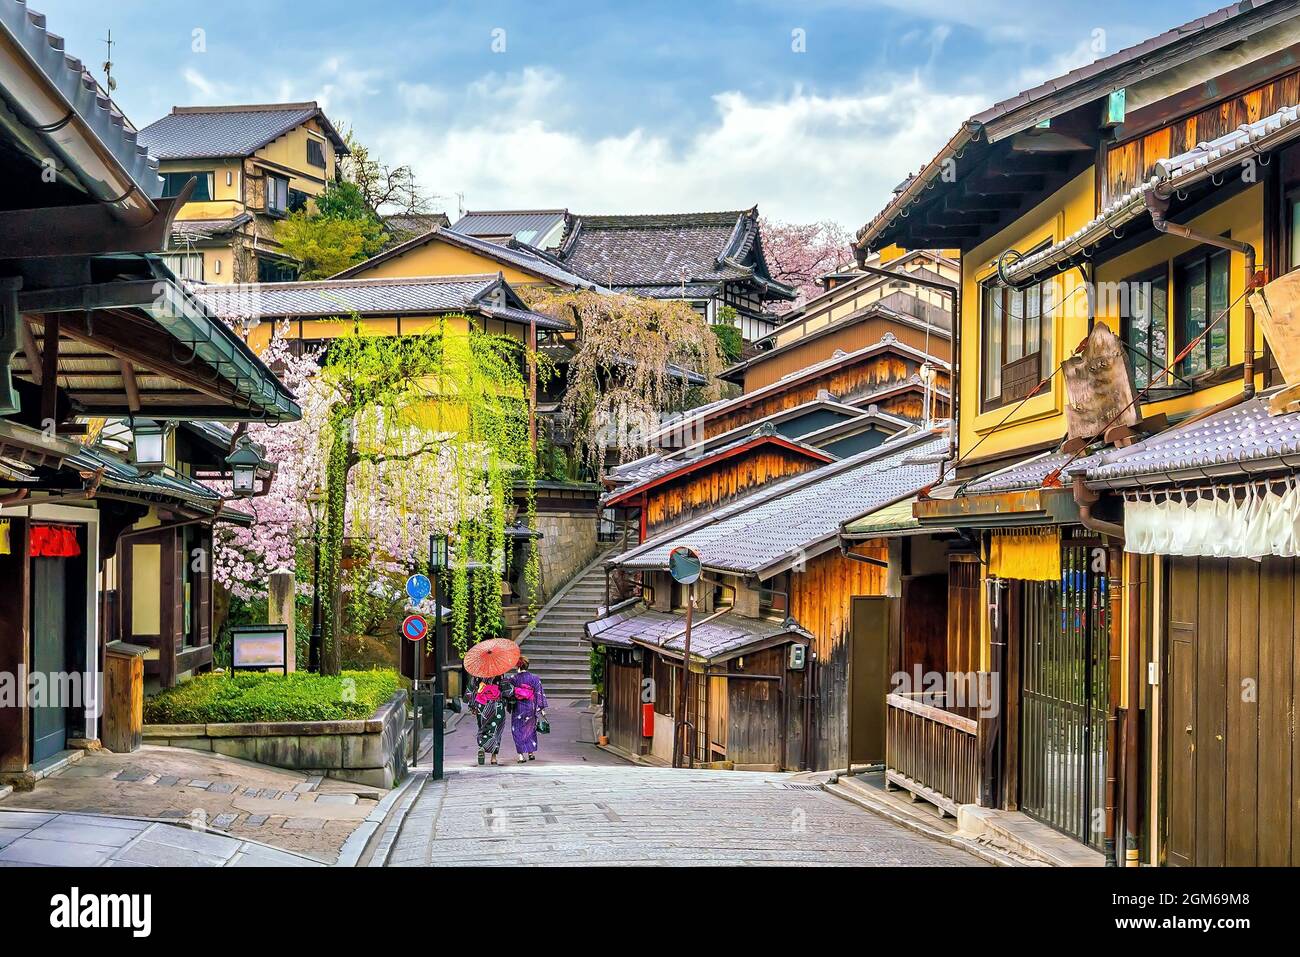 Old town Kyoto, the Higashiyama District during sakura season in Japan Stock Photo